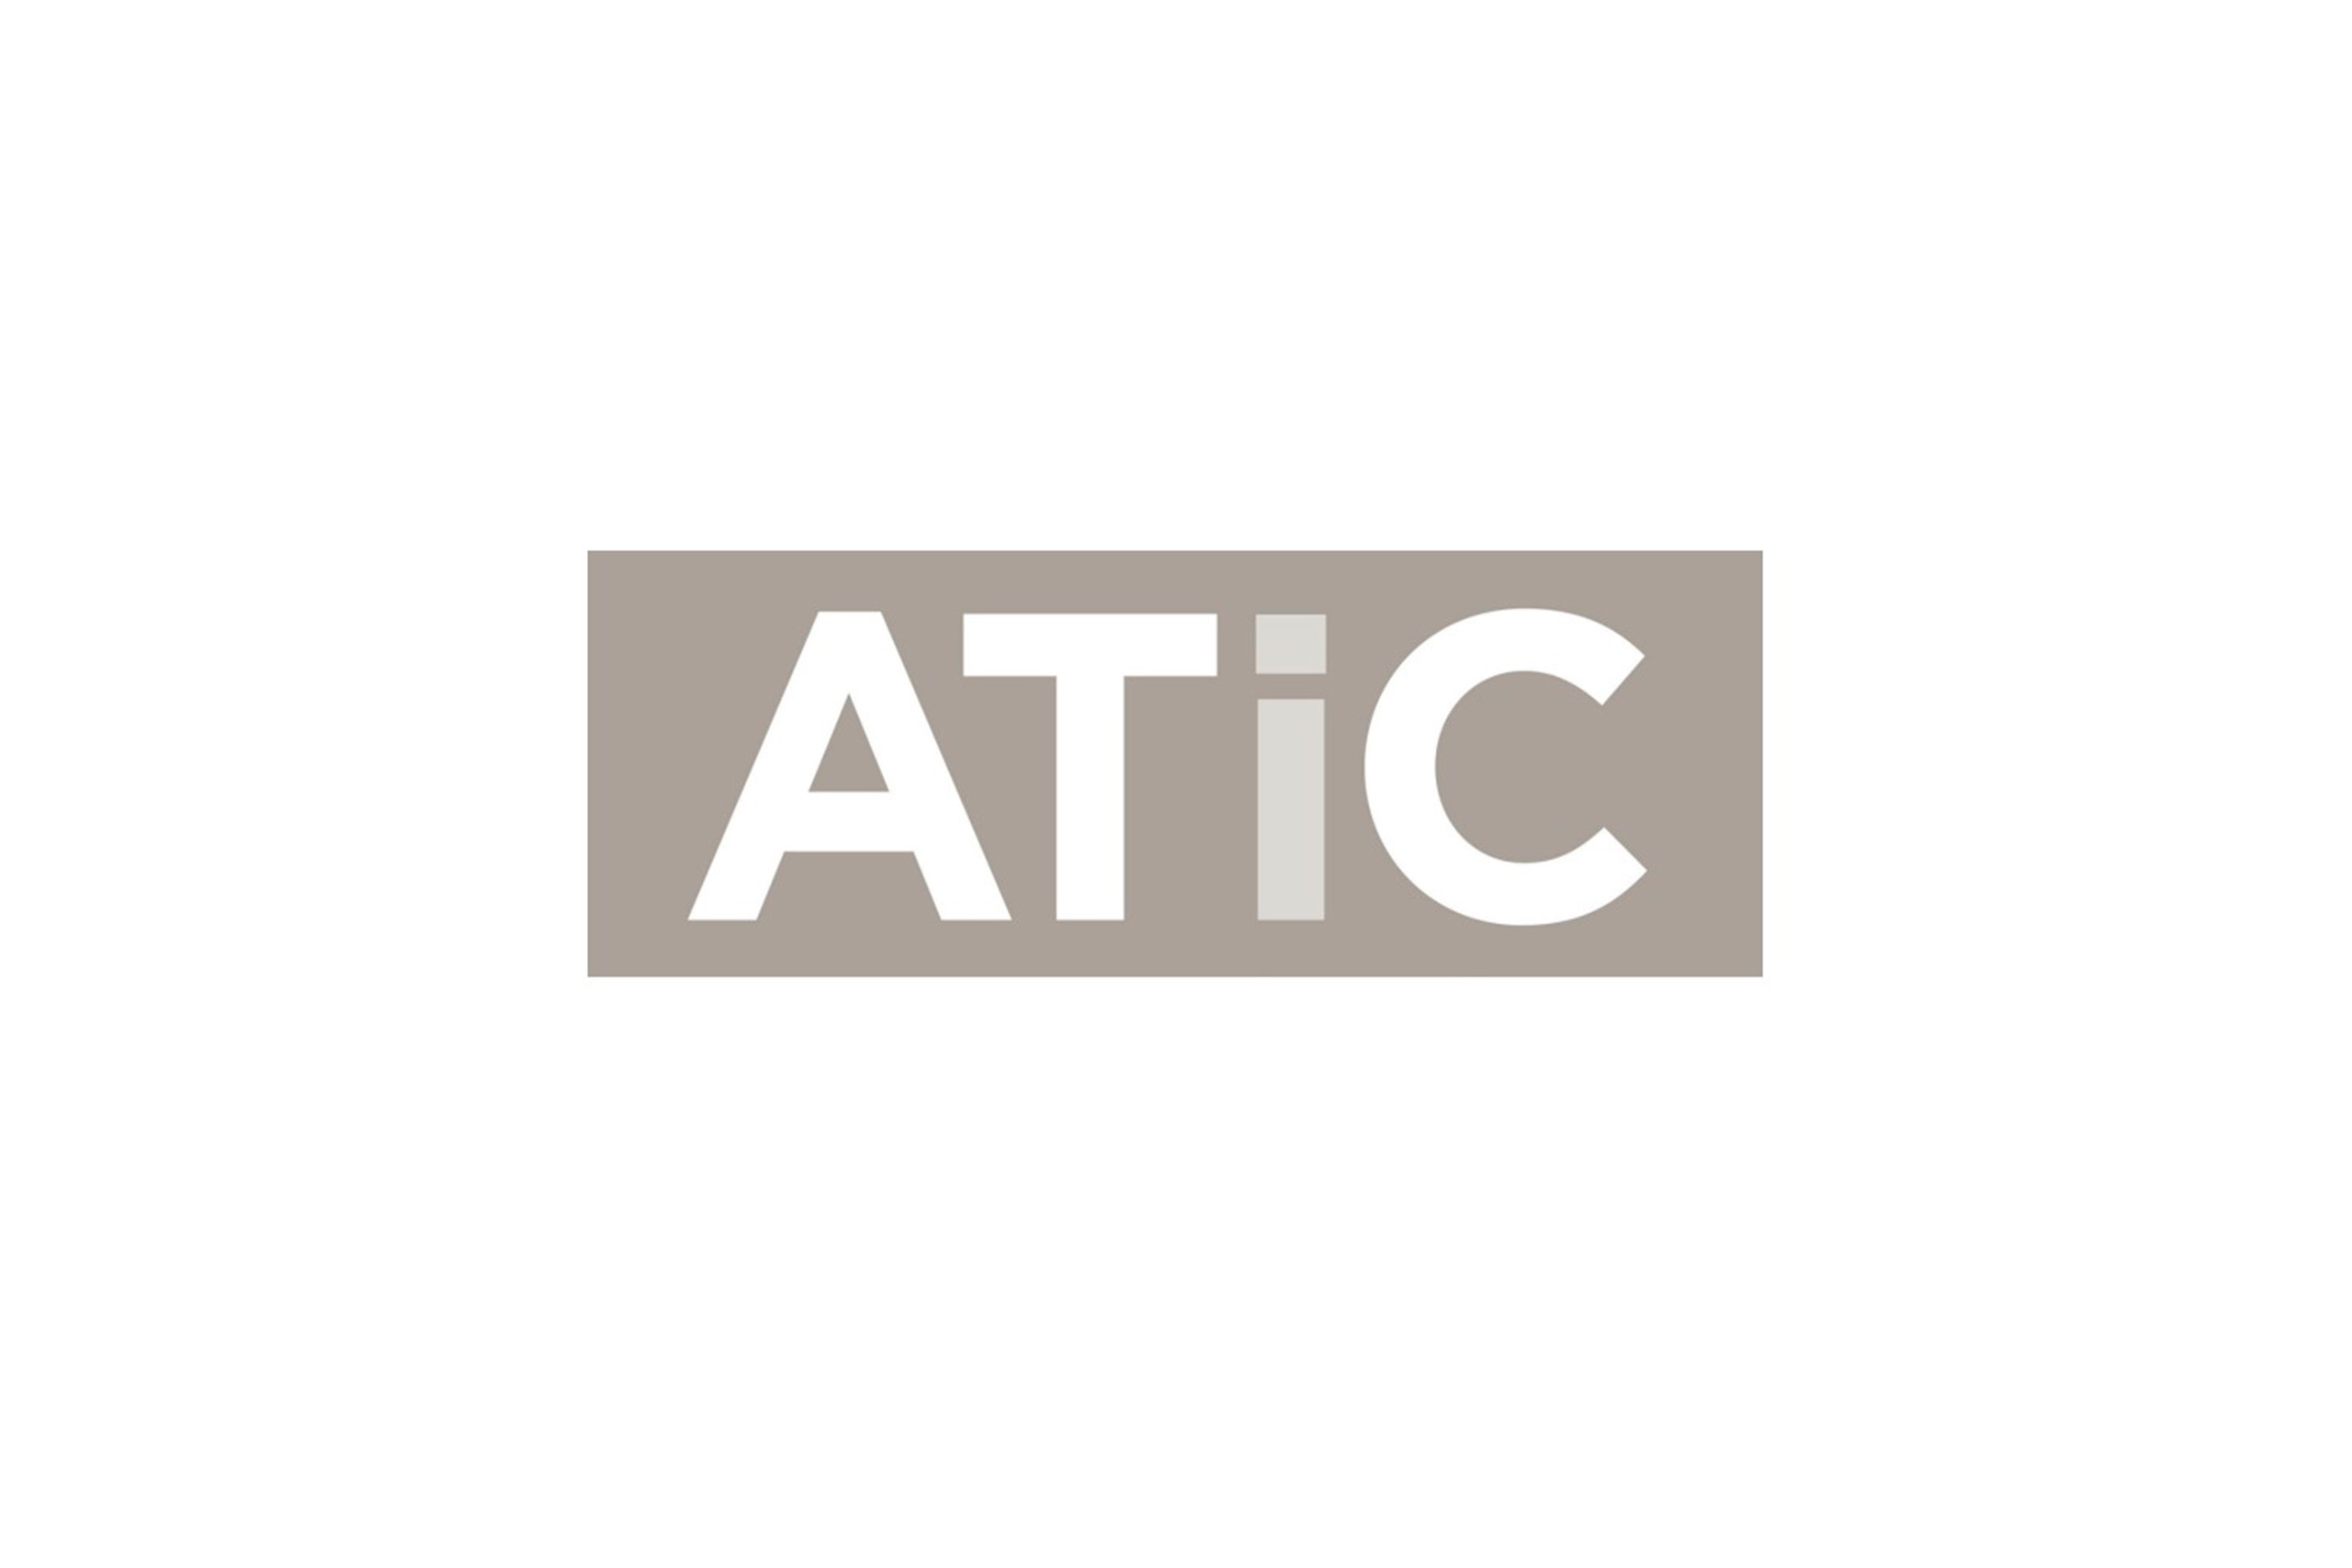 L’equip d’Interoperabilitat i Tecnologies ha publicat el catàleg ATIC al Servidor Terminològic del Departament de Salut de Catalunya